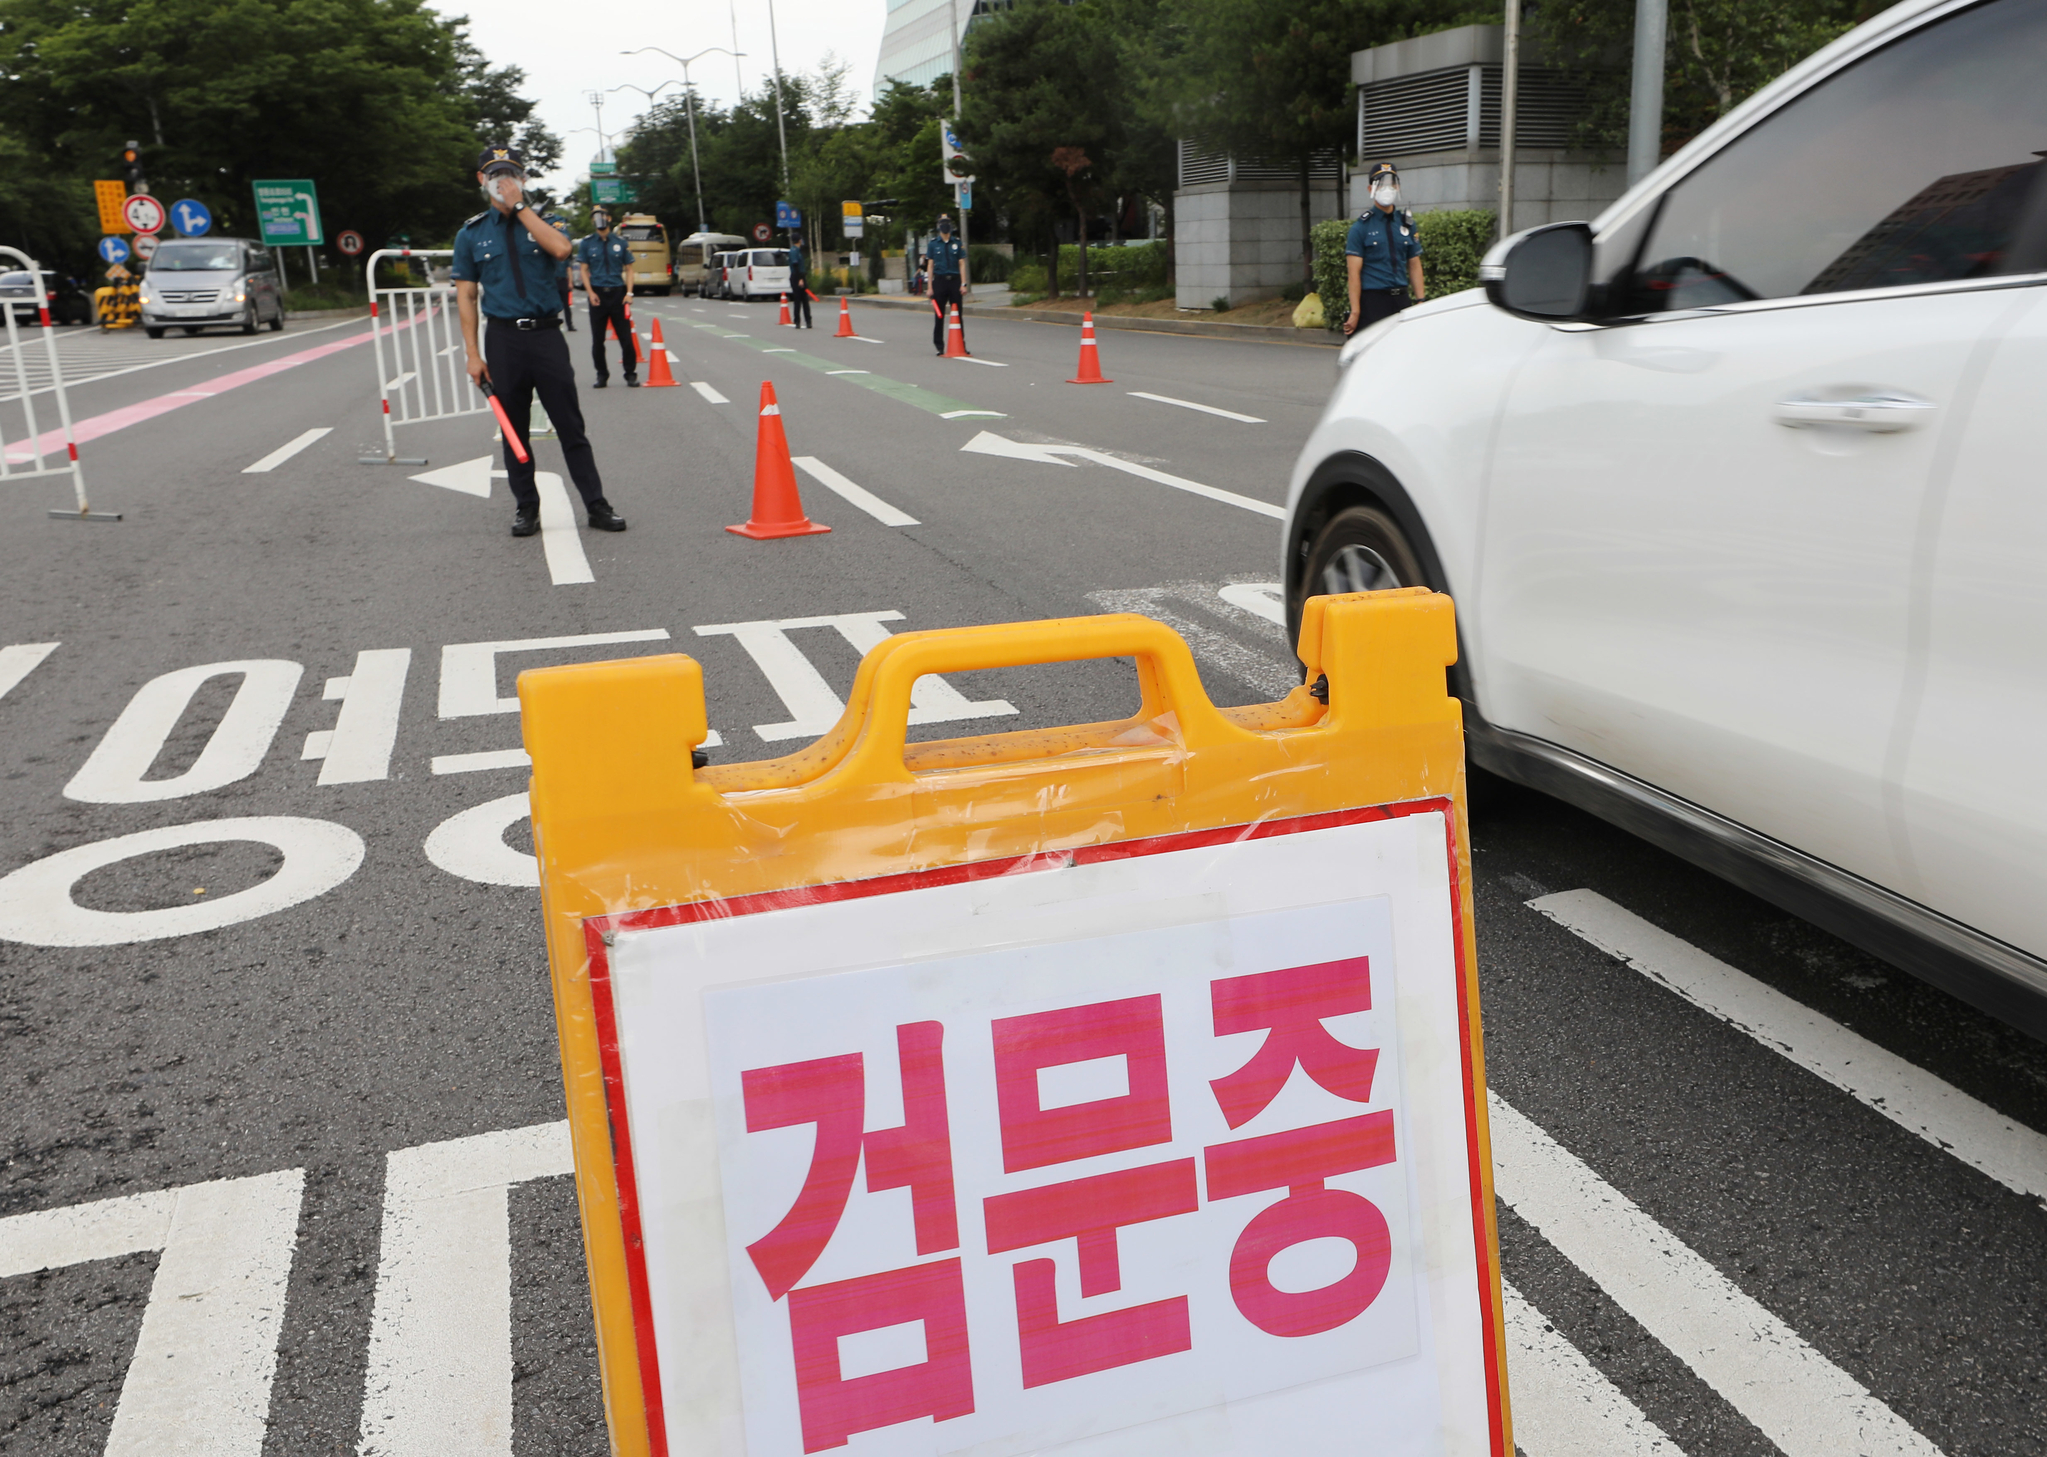 민주노총의 전국노동자대회가 예정된 3일 오전 서울 여의도 사거리에서 경찰이 임시 검문소를 설치하고 지나는 차량을 검문하고 있다. 뉴스1